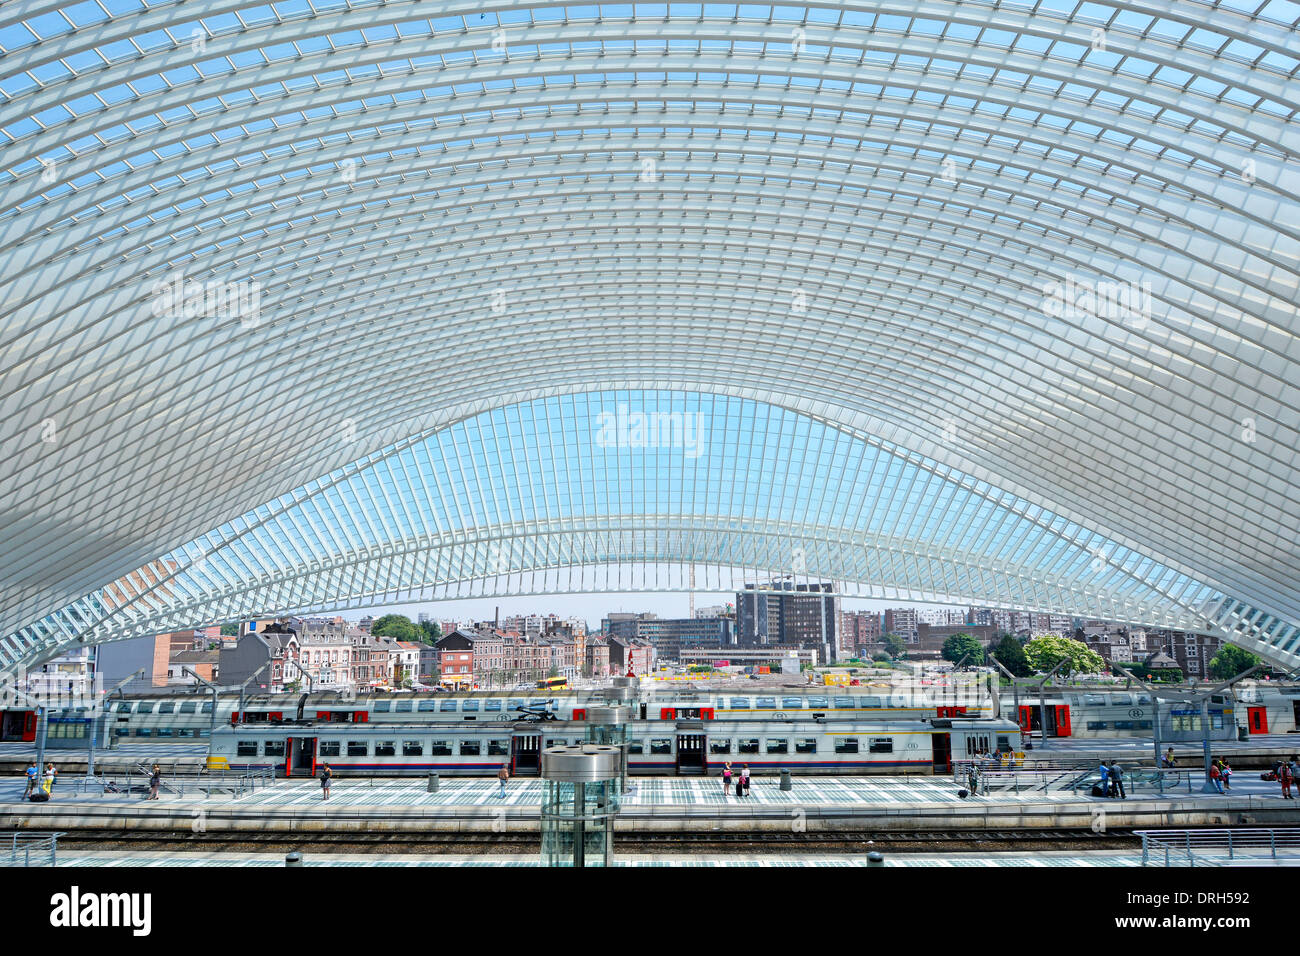 Riesige symmetrische Glasdach Gebäude Kurven über moderne öffentliche Verkehrsmittel Lüttich Belgien Bahnhof Plattform & Gleise Stadt Gebäude über Stockfoto